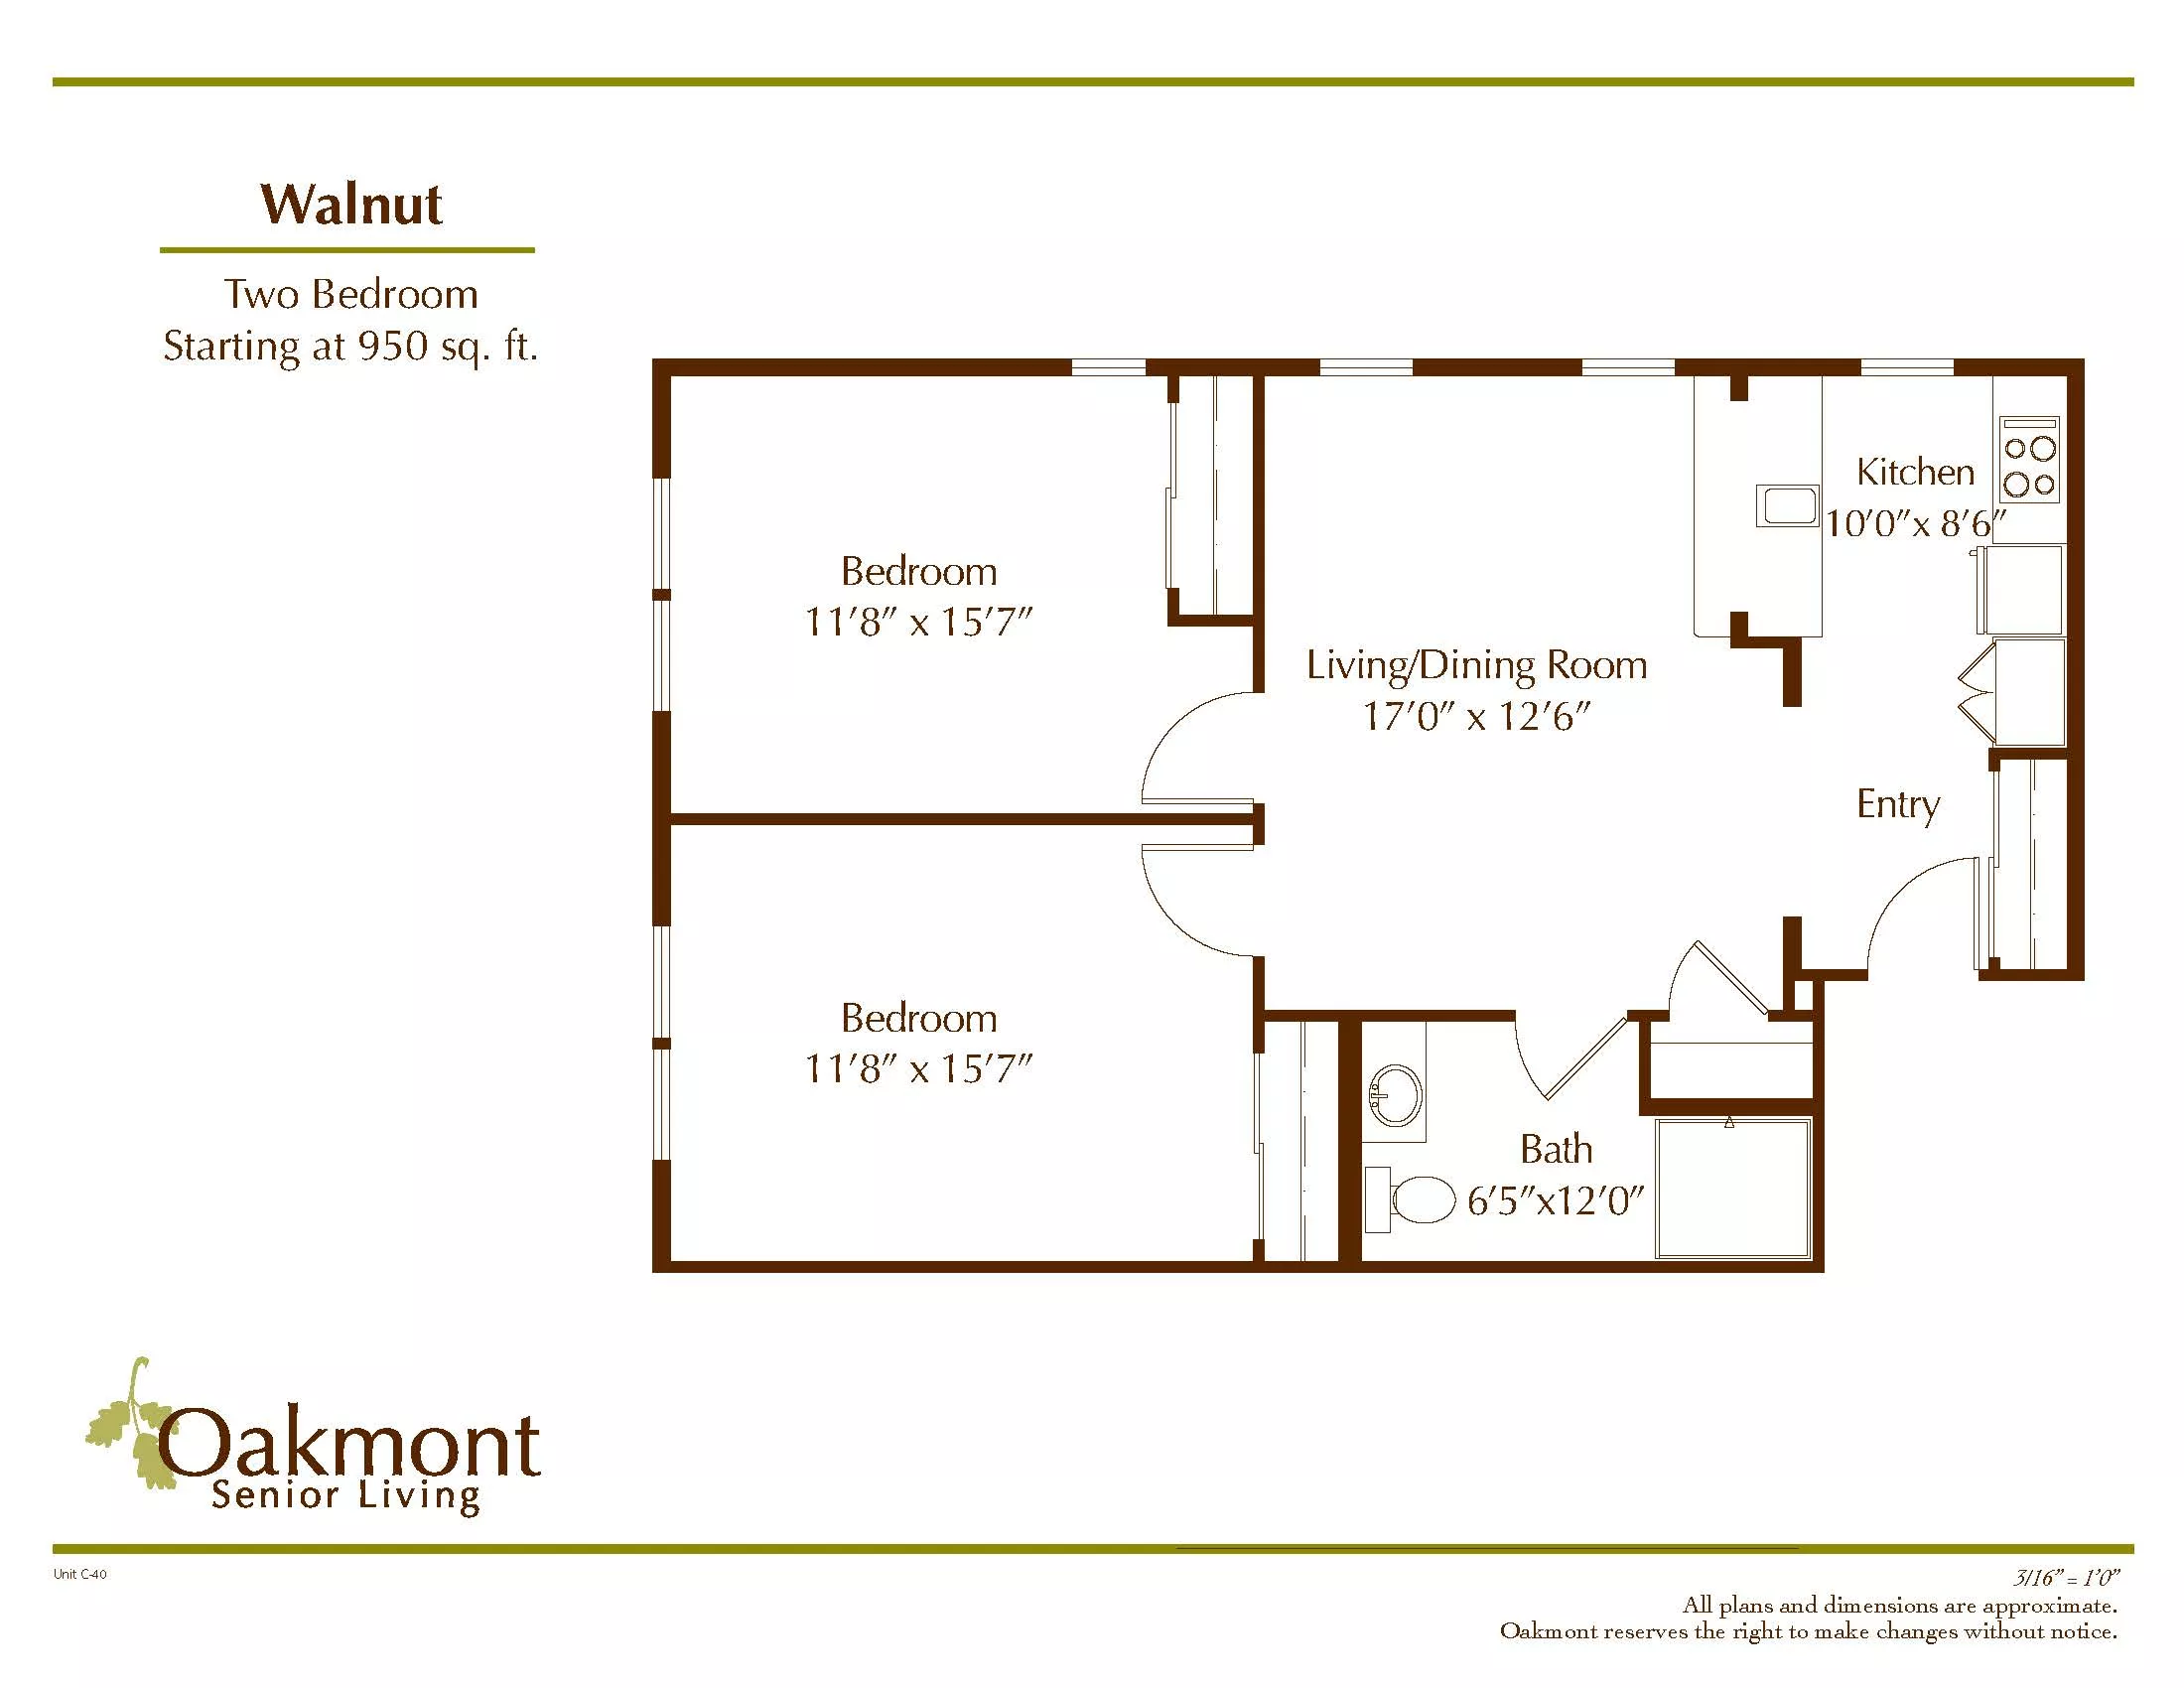 Walnut floor plan